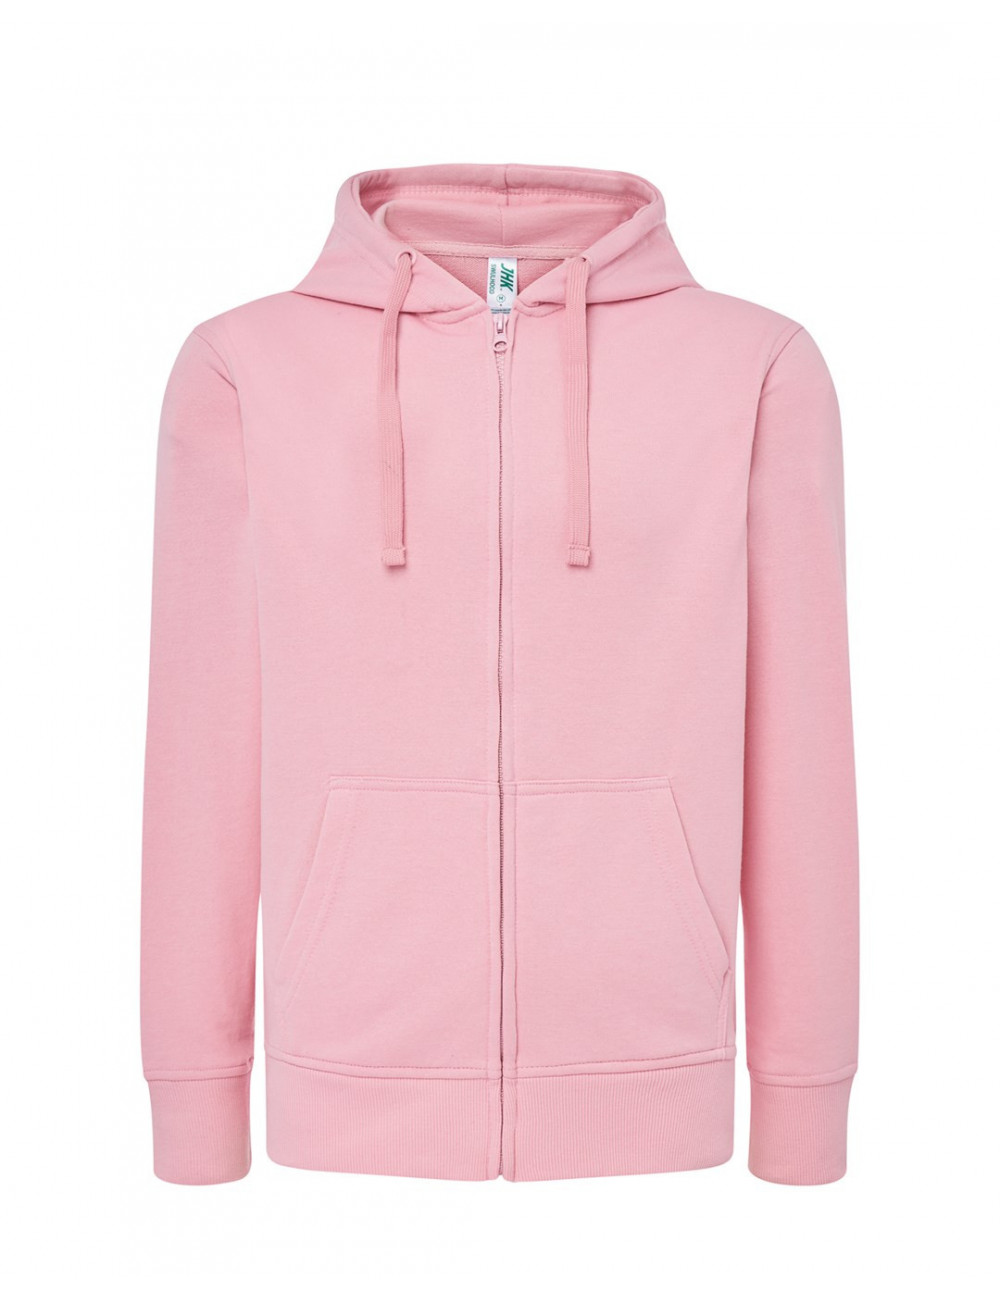 Women`s sweatshirt swul hood full zip pink Jhk